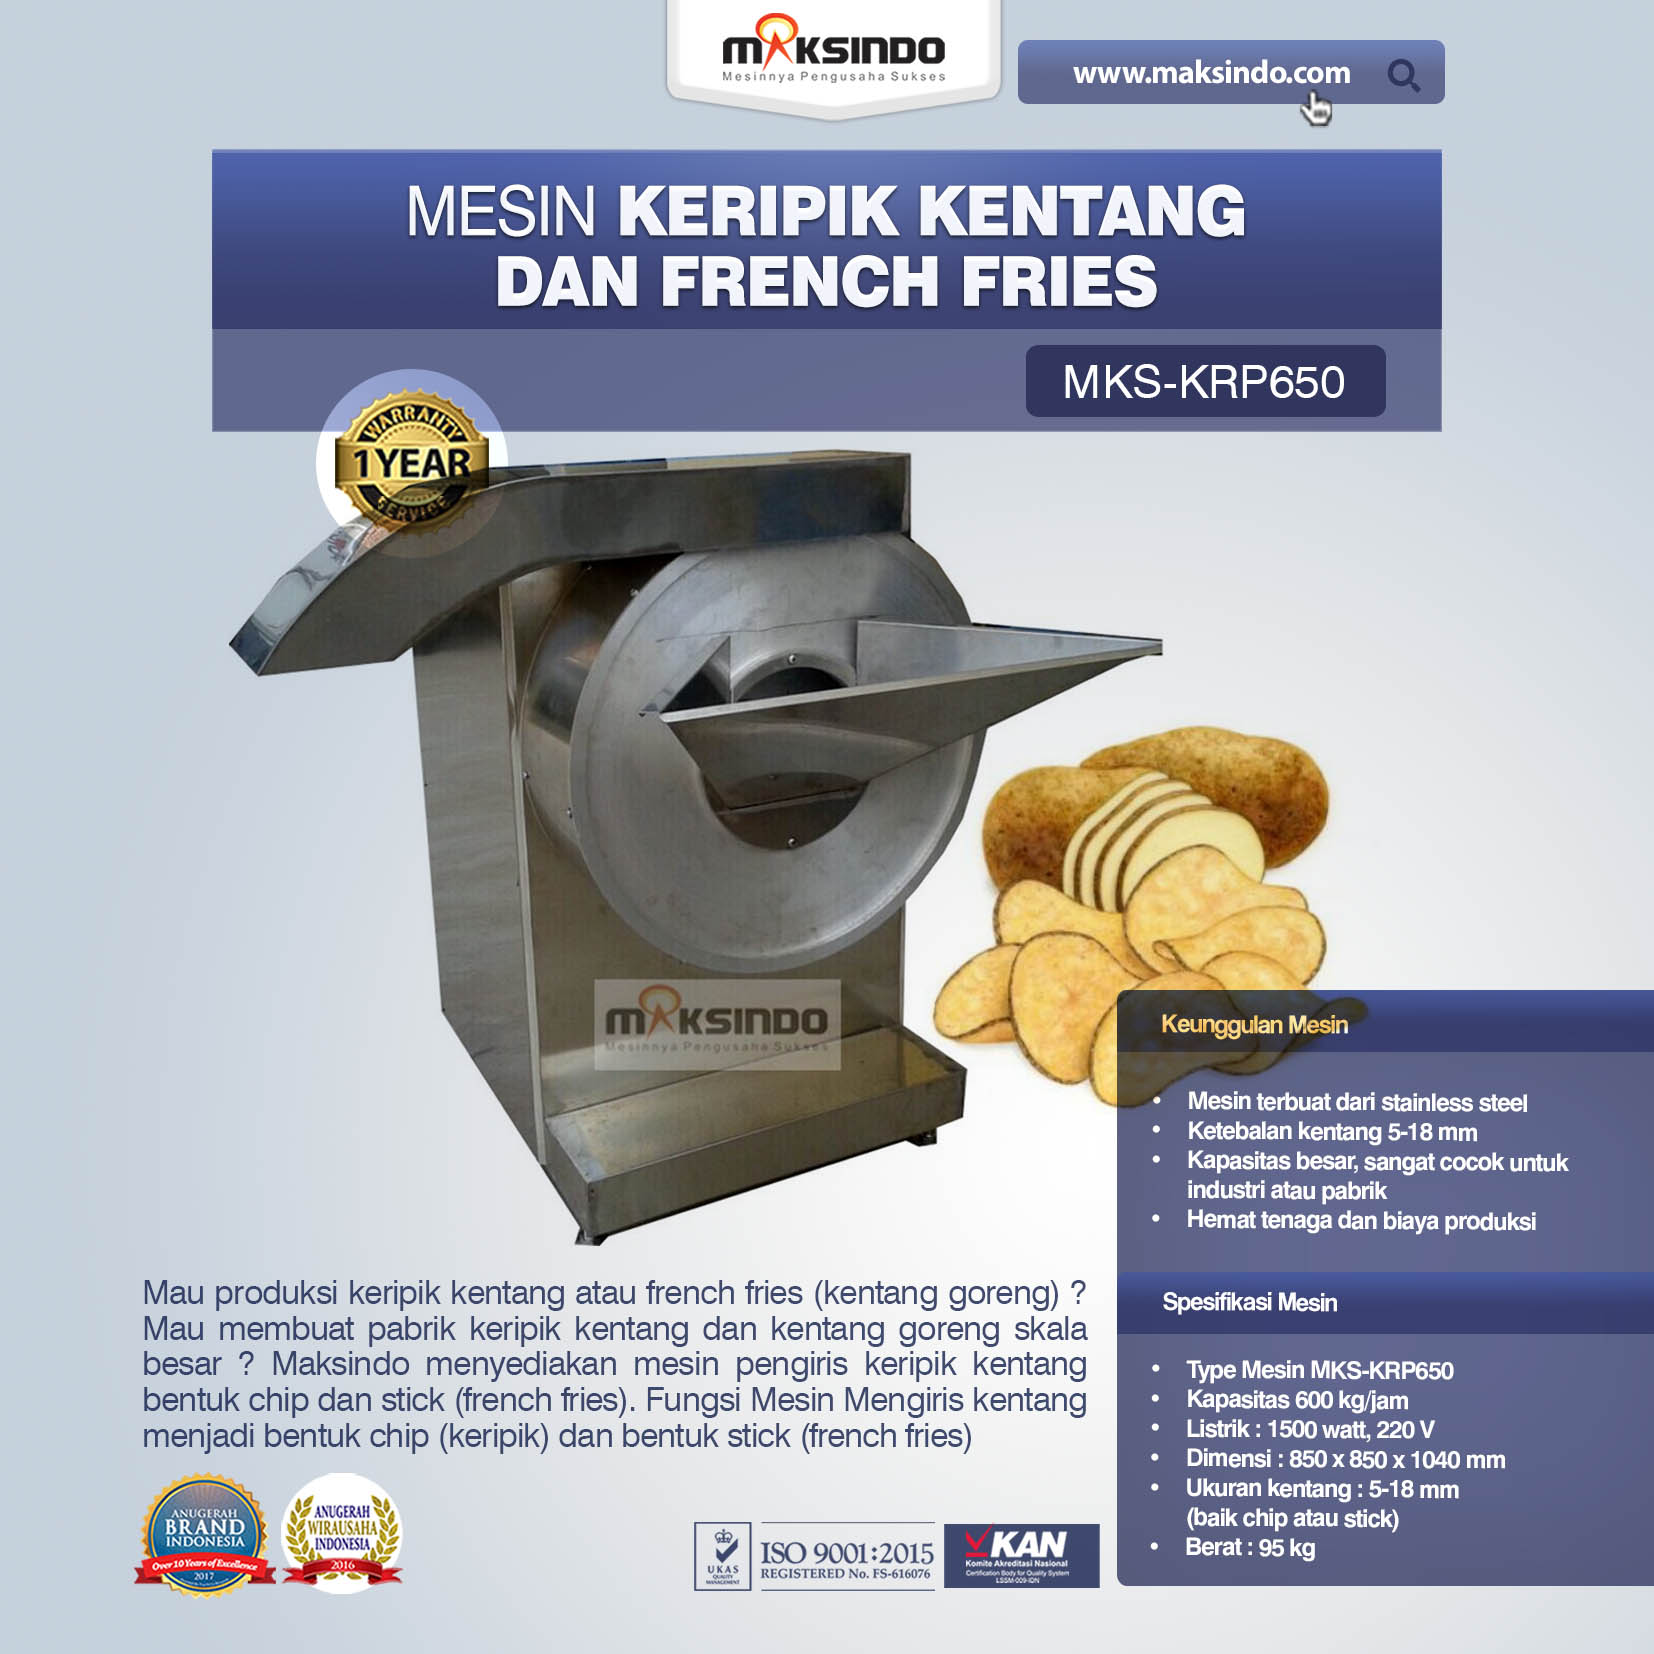 Jual Mesin Keripik Kentang dan French Fries KRP650 di Solo